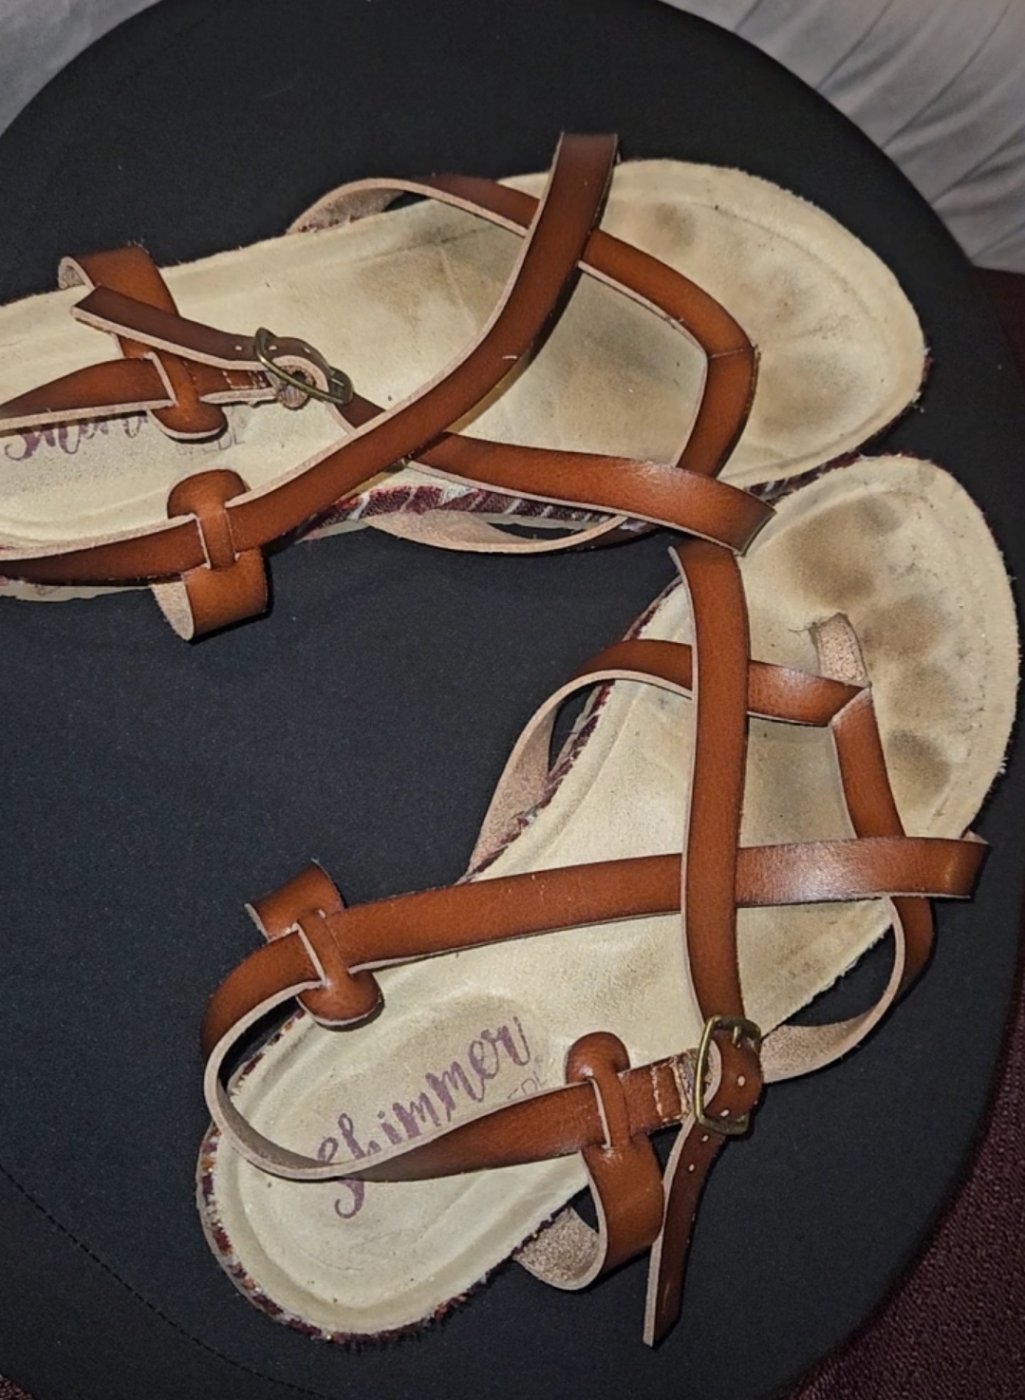 Worn strappy sandals